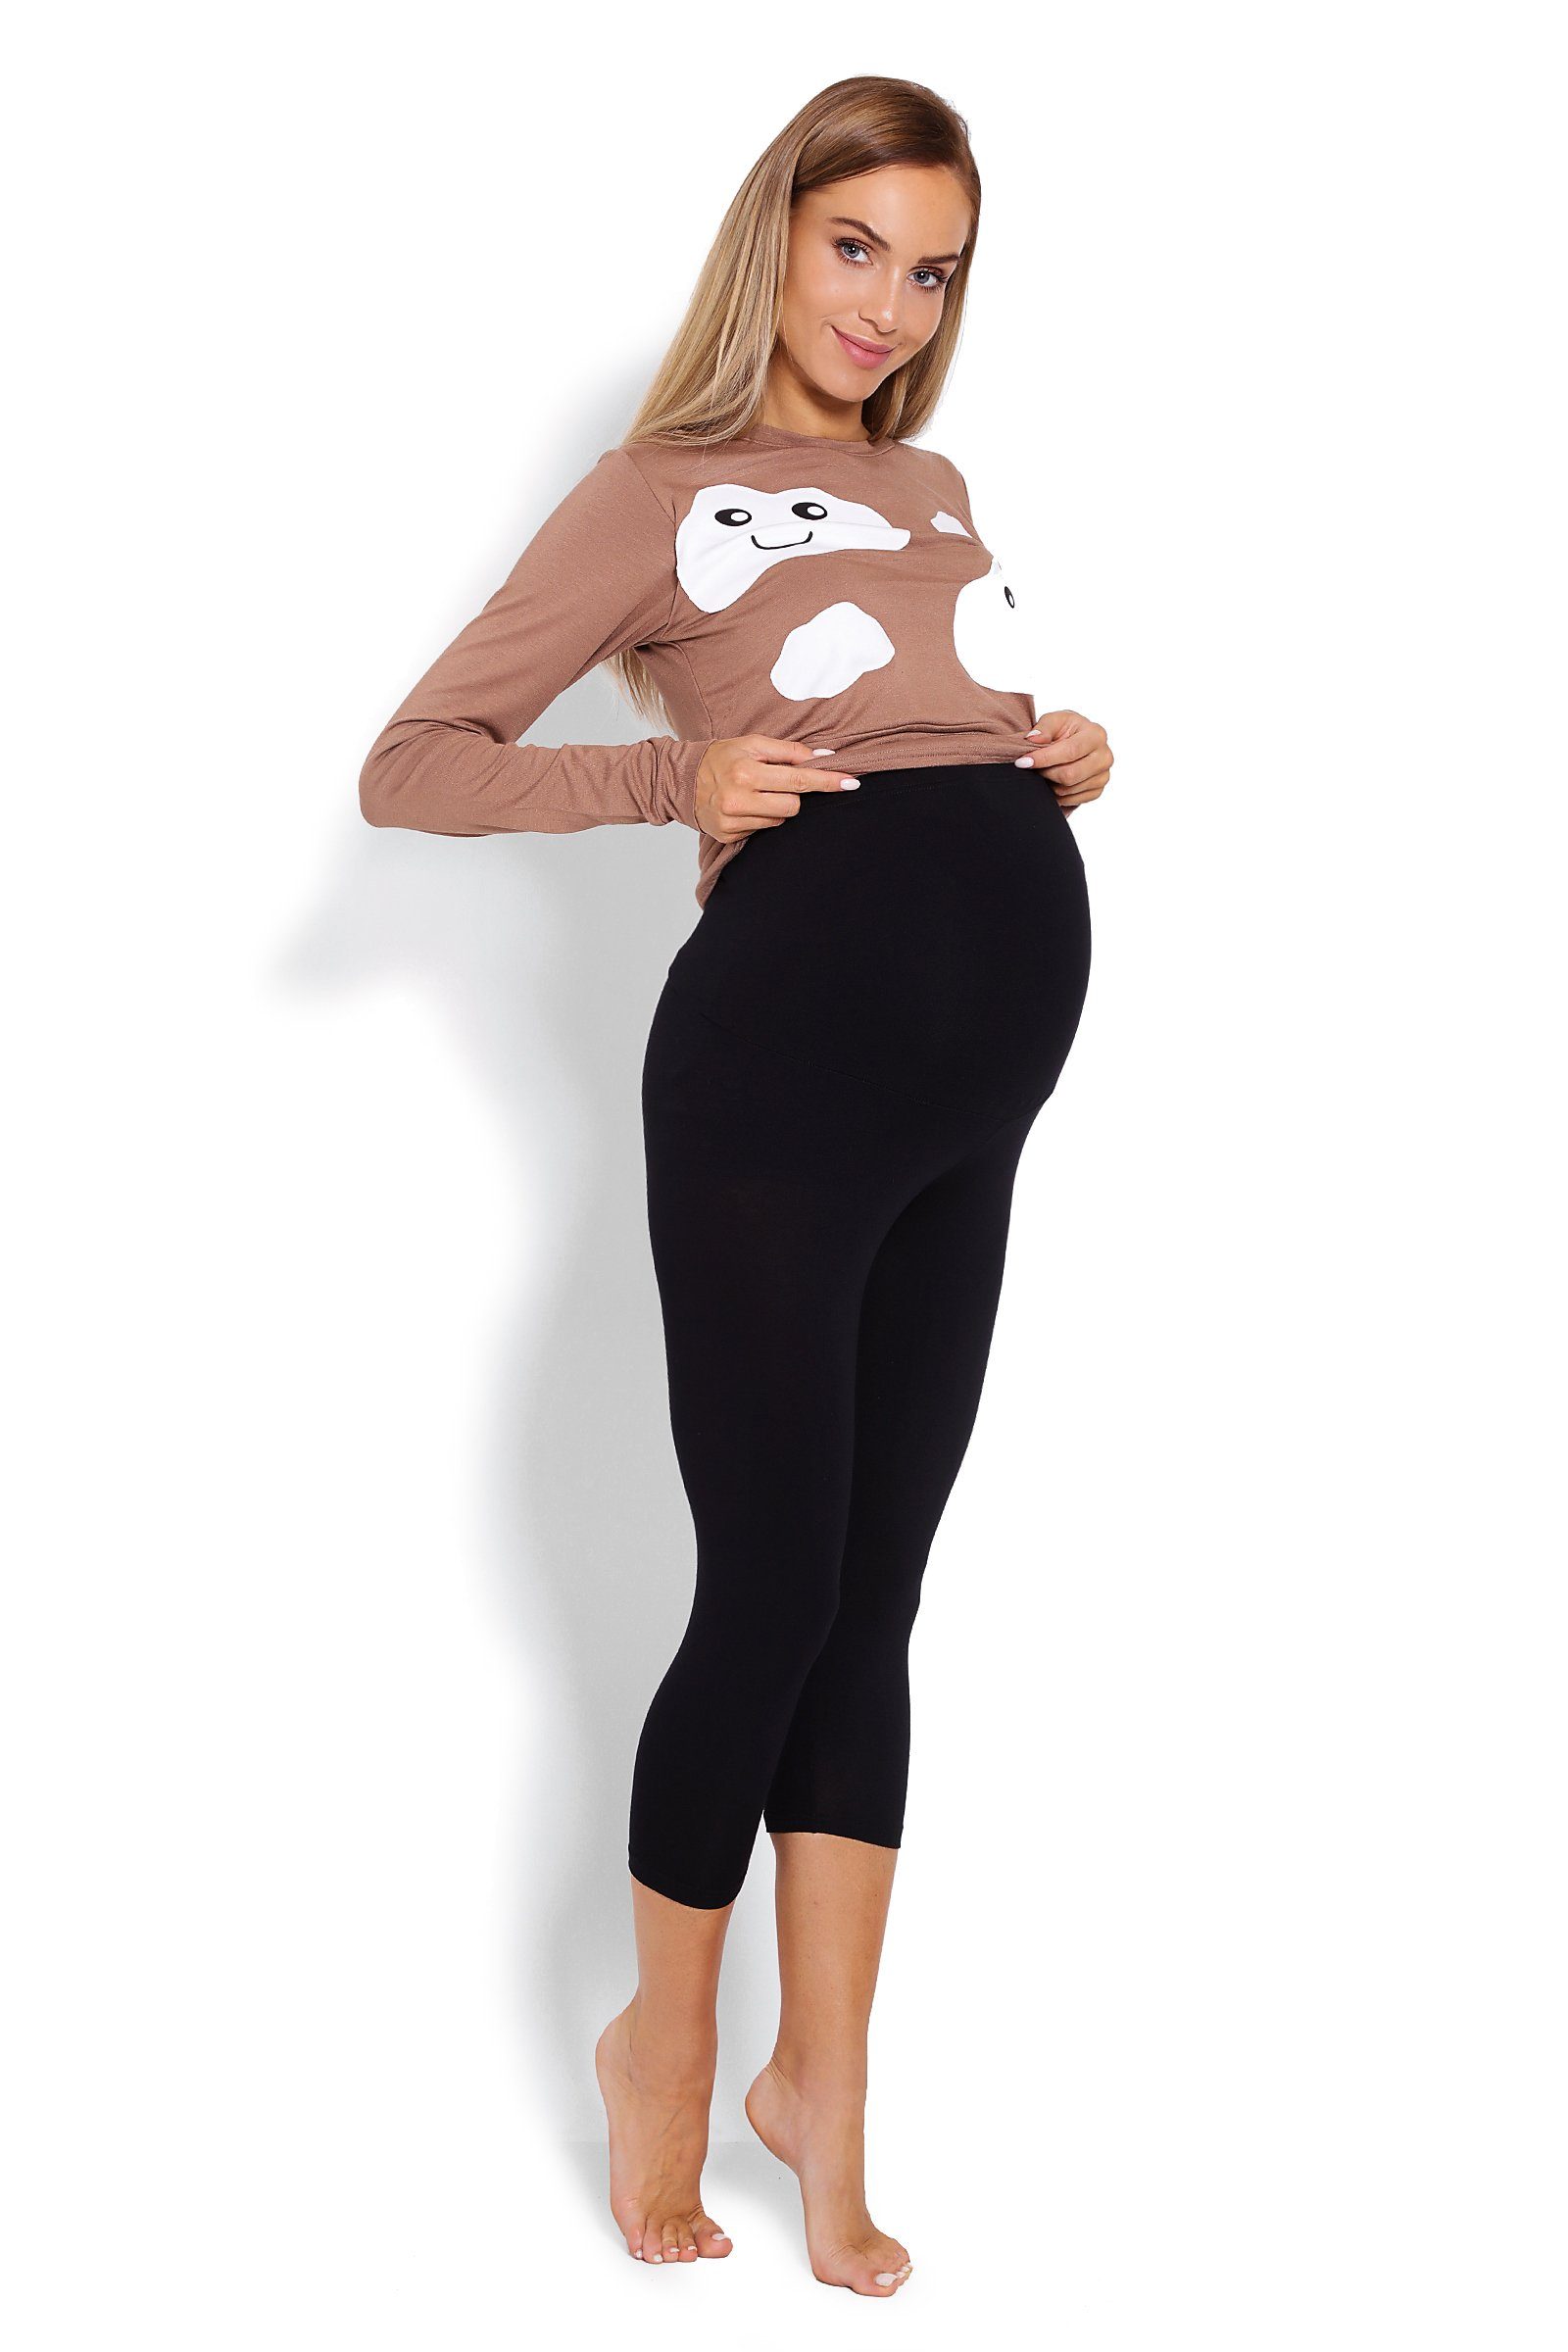 PeeKaBoo Umstandspyjama Schlafanzug Stillen Schwangerschaft Stillschlafanzug braun/schwarz